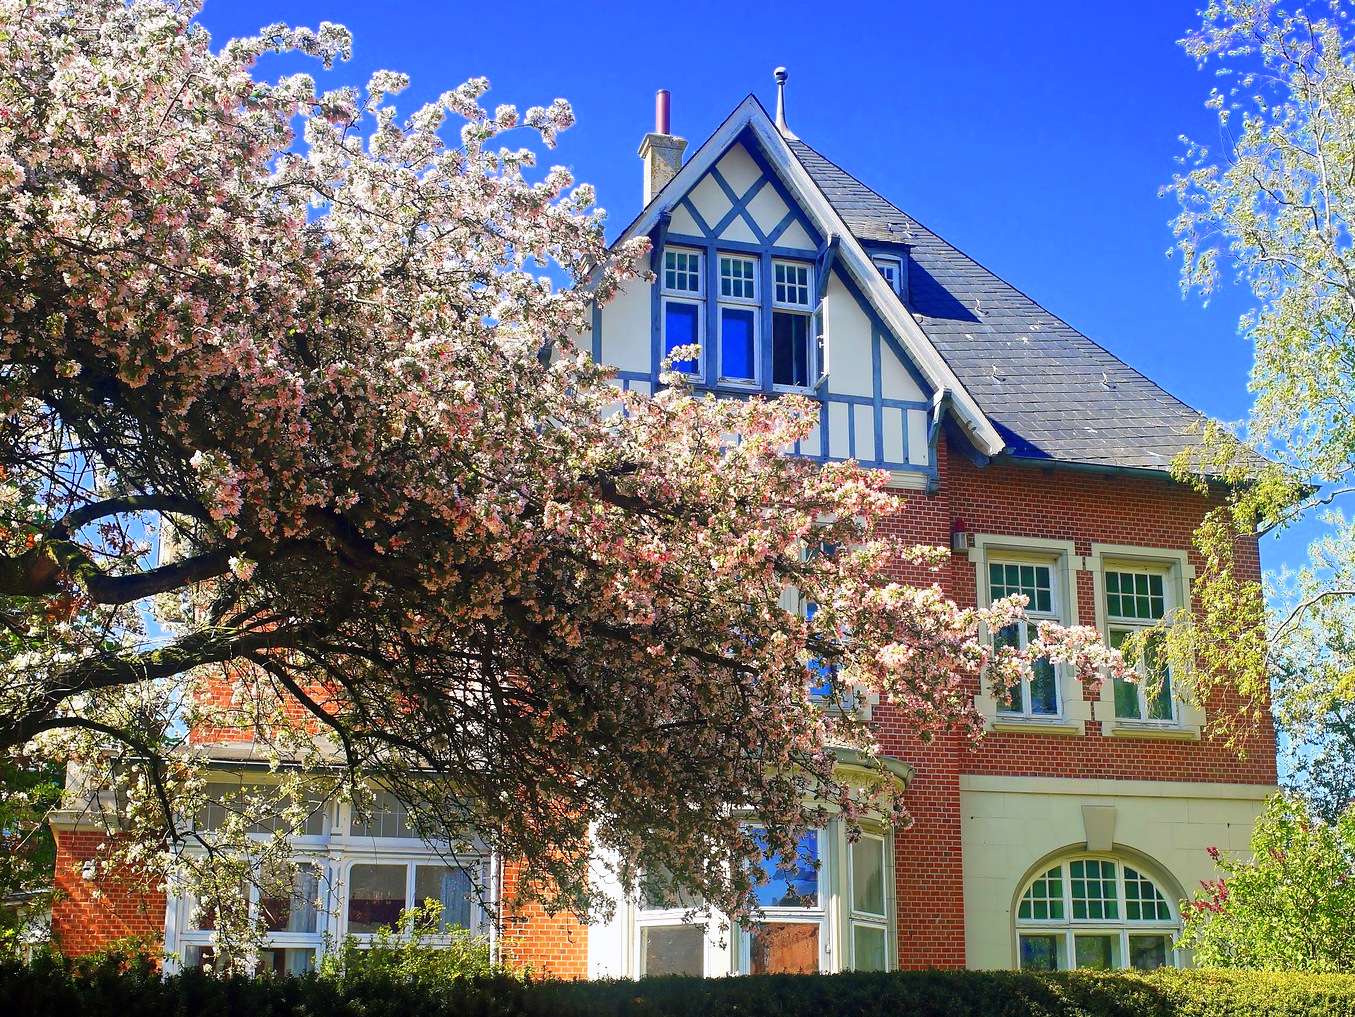 Villa sull'albero in fiore (Ostfriesland) puzzle online